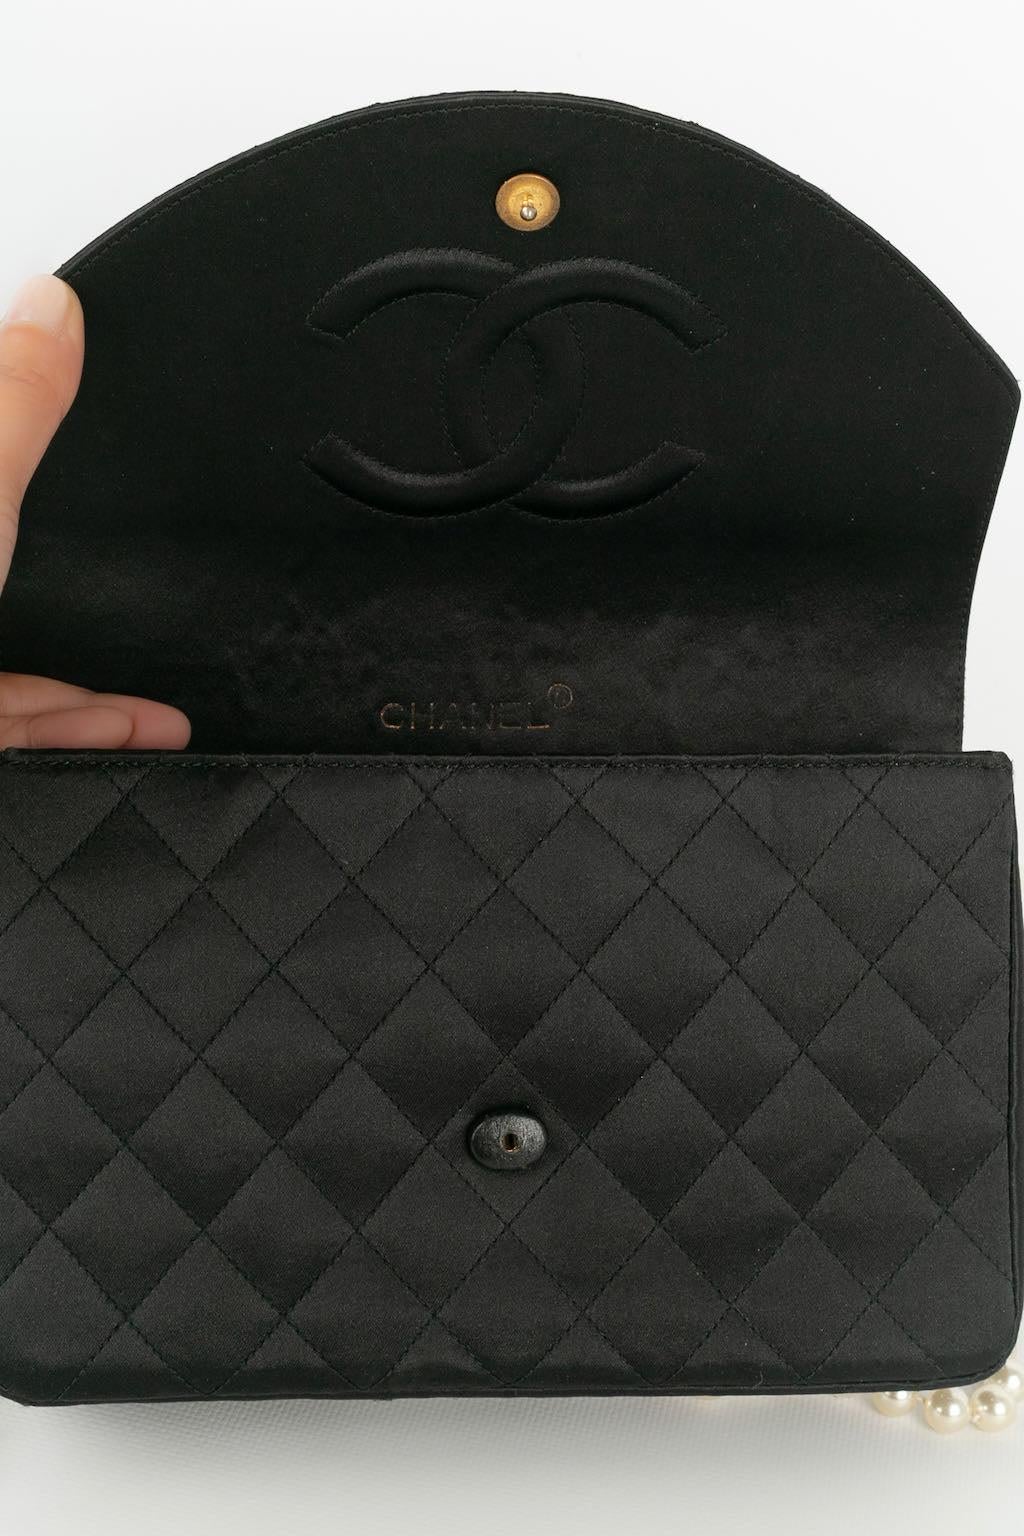 Chanel Jewel Evening Black Bag For Sale 5